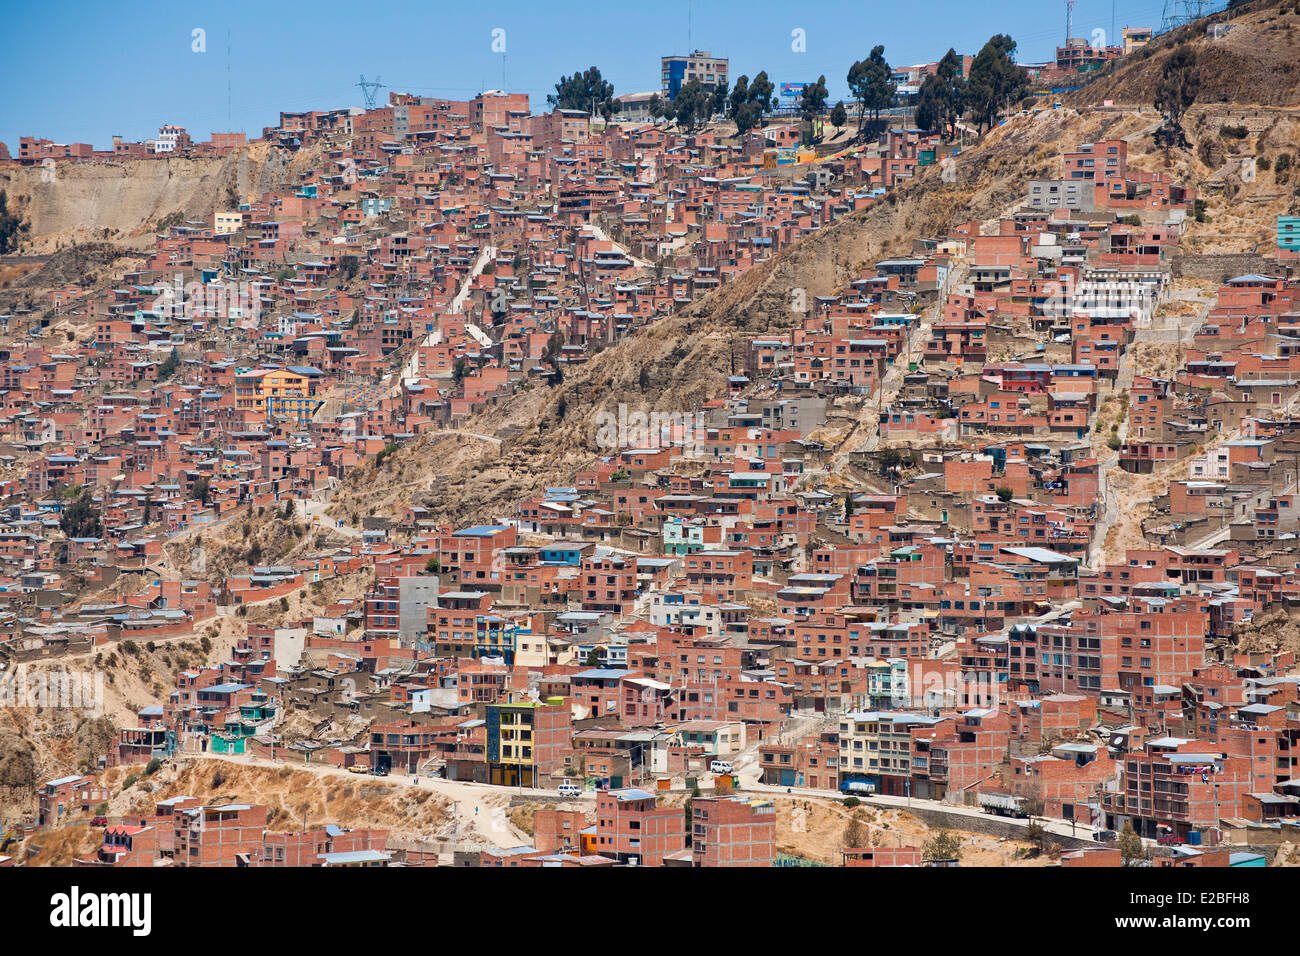 Bolivia, La Paz Department, La Paz, El Alto district Stock Photo